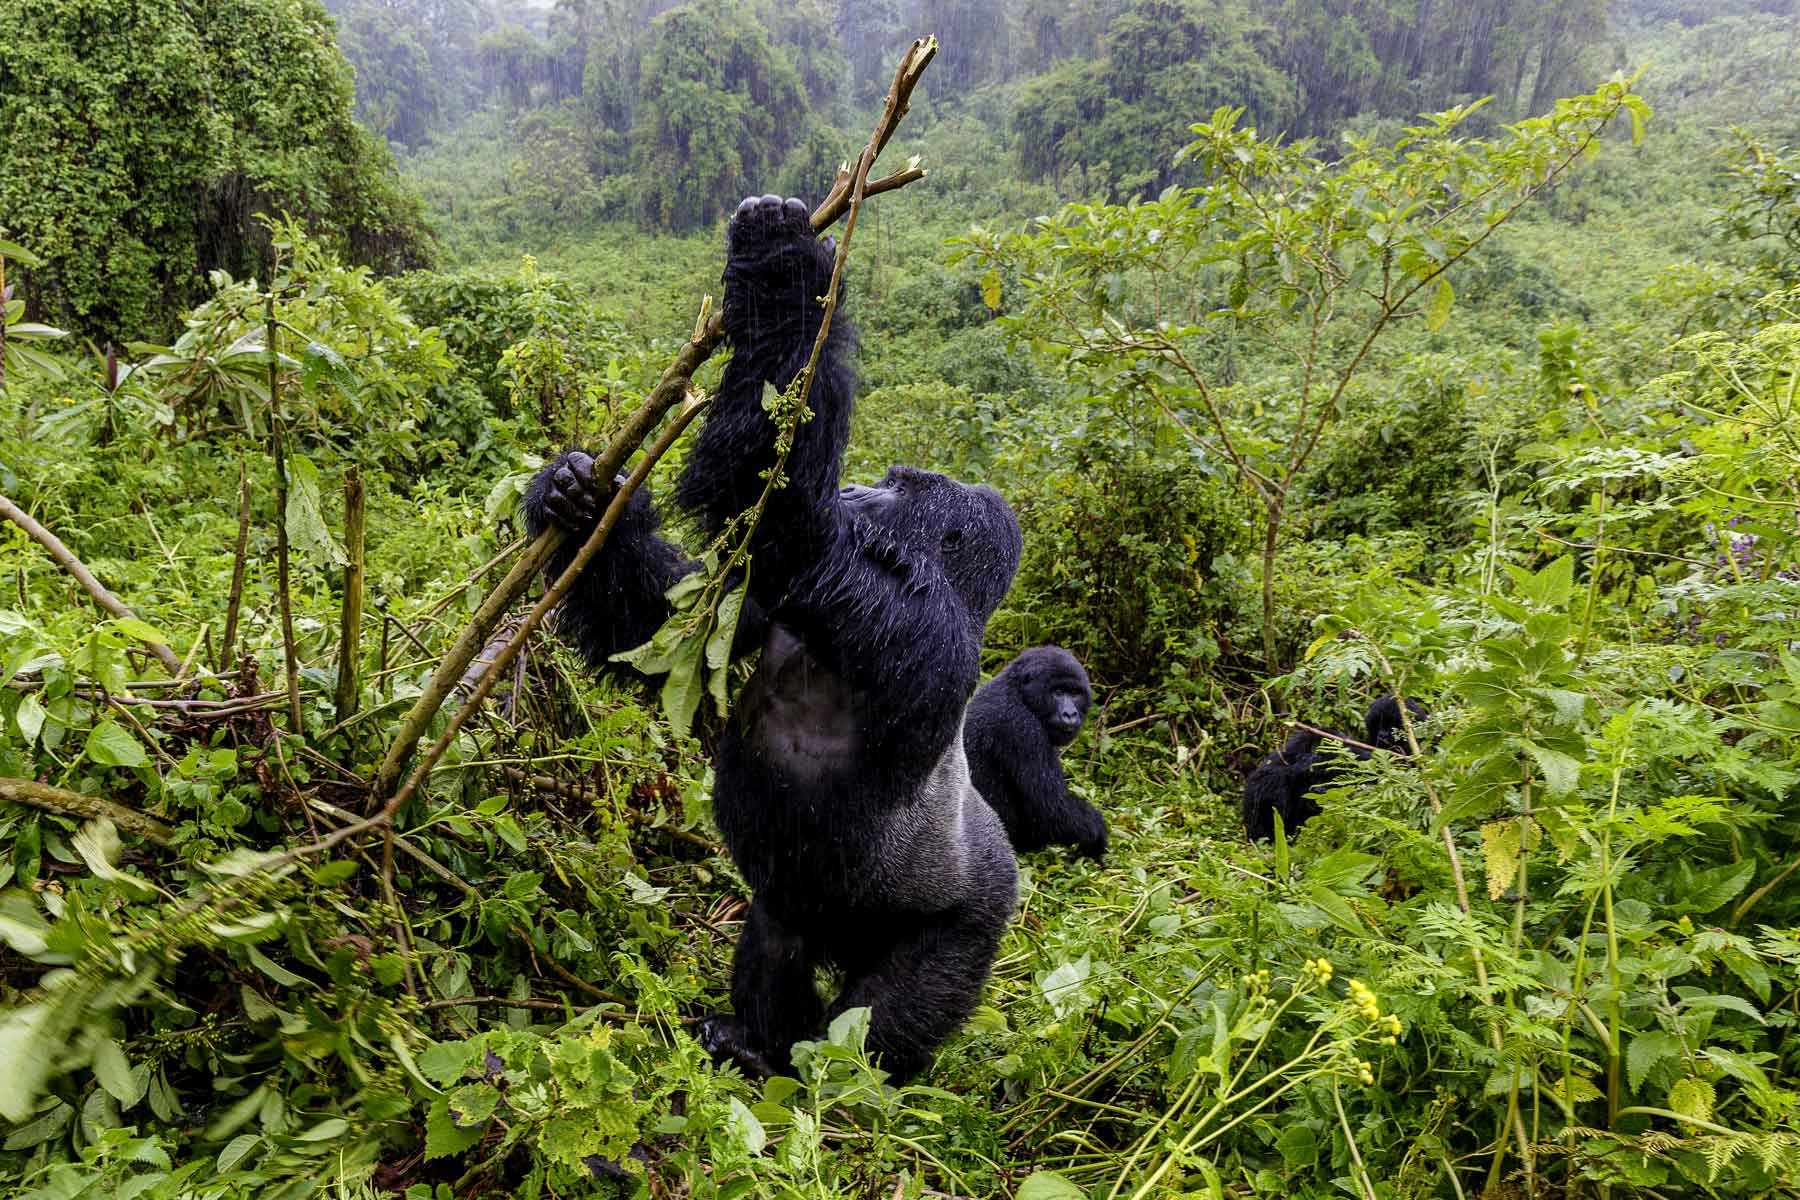 3-days-rwanda-gorilla-trekking-adventure-safari